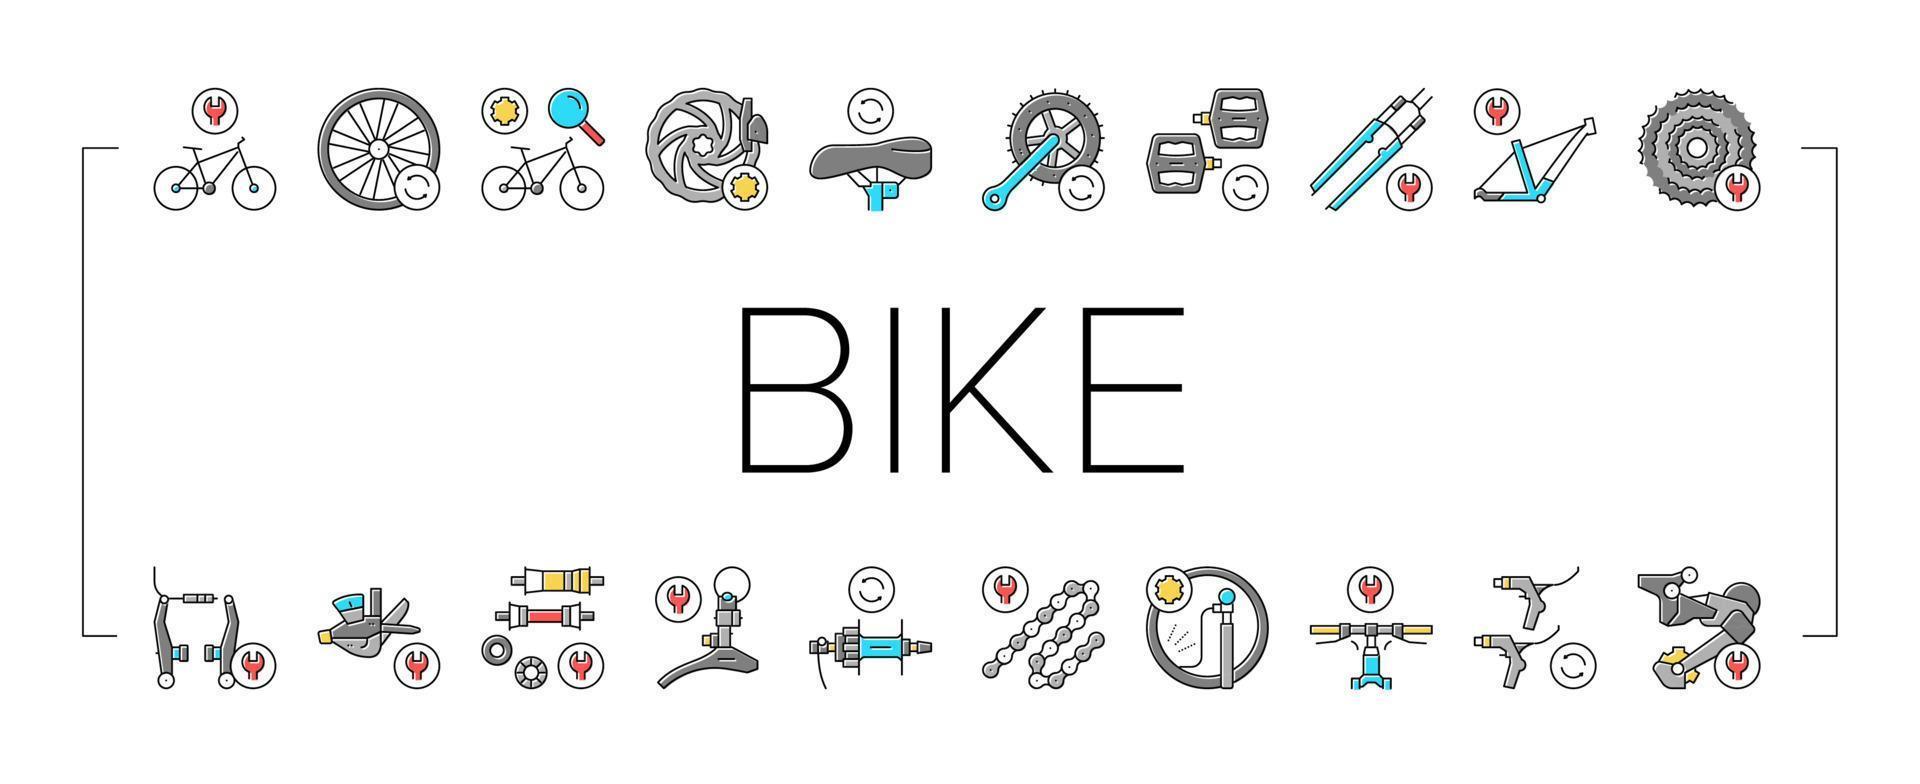 icone di raccolta del servizio di riparazione bici impostate il vettore